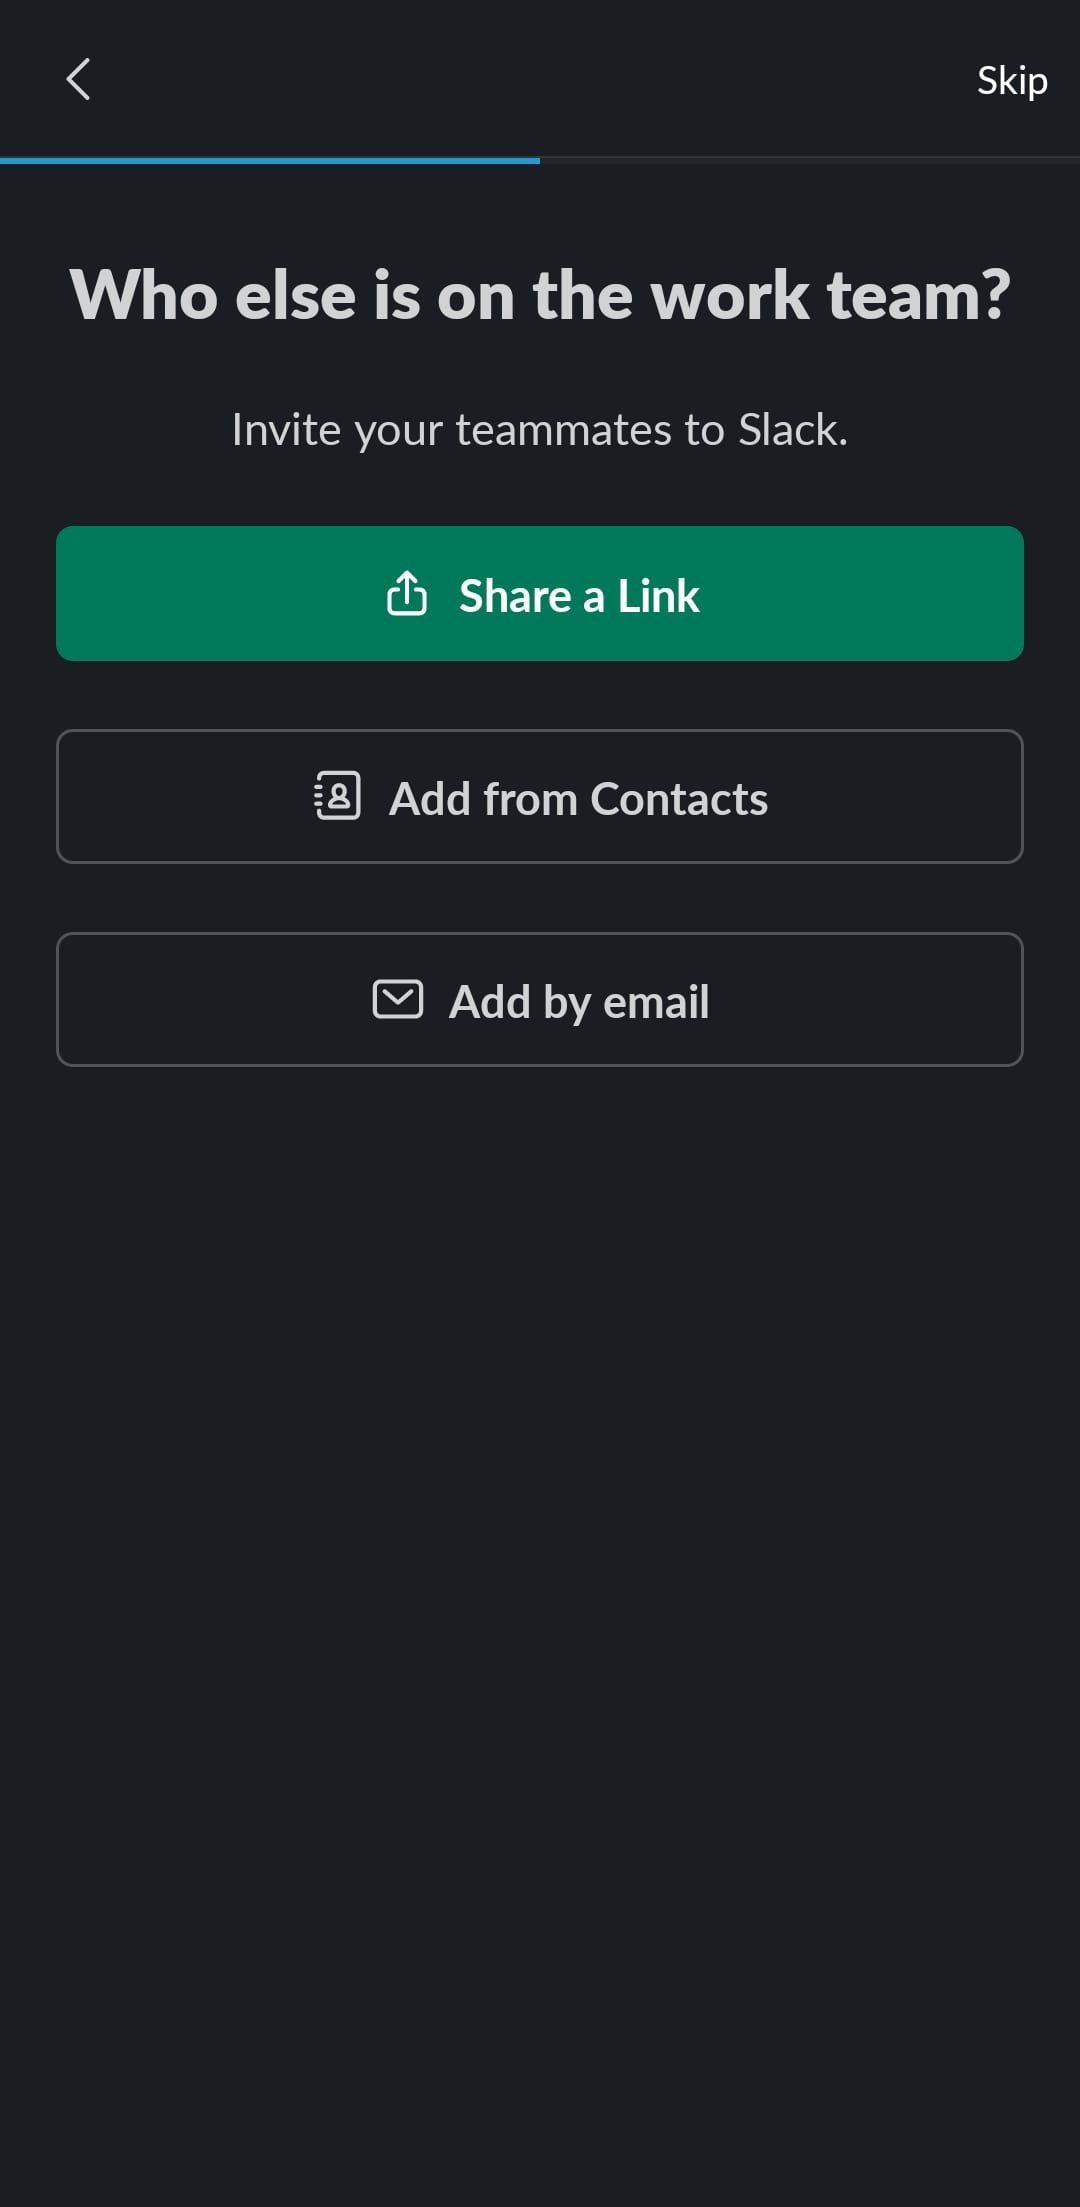 Invite teammates menu on Slack mobile app